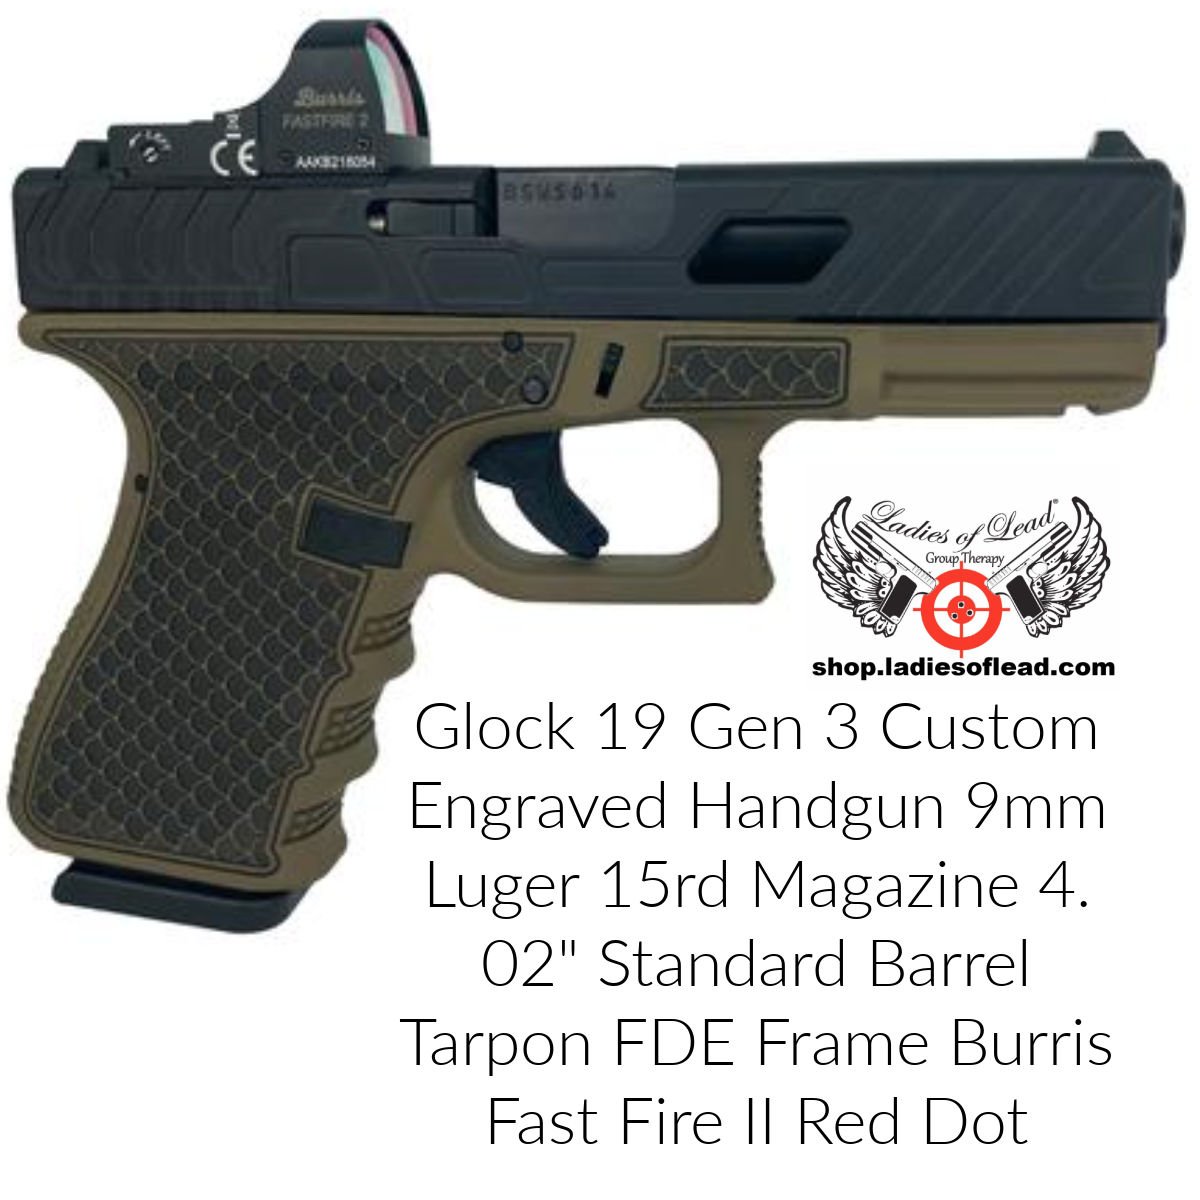 Glock 19 Gen 3 Fast Fire II Red Dot.jpeg